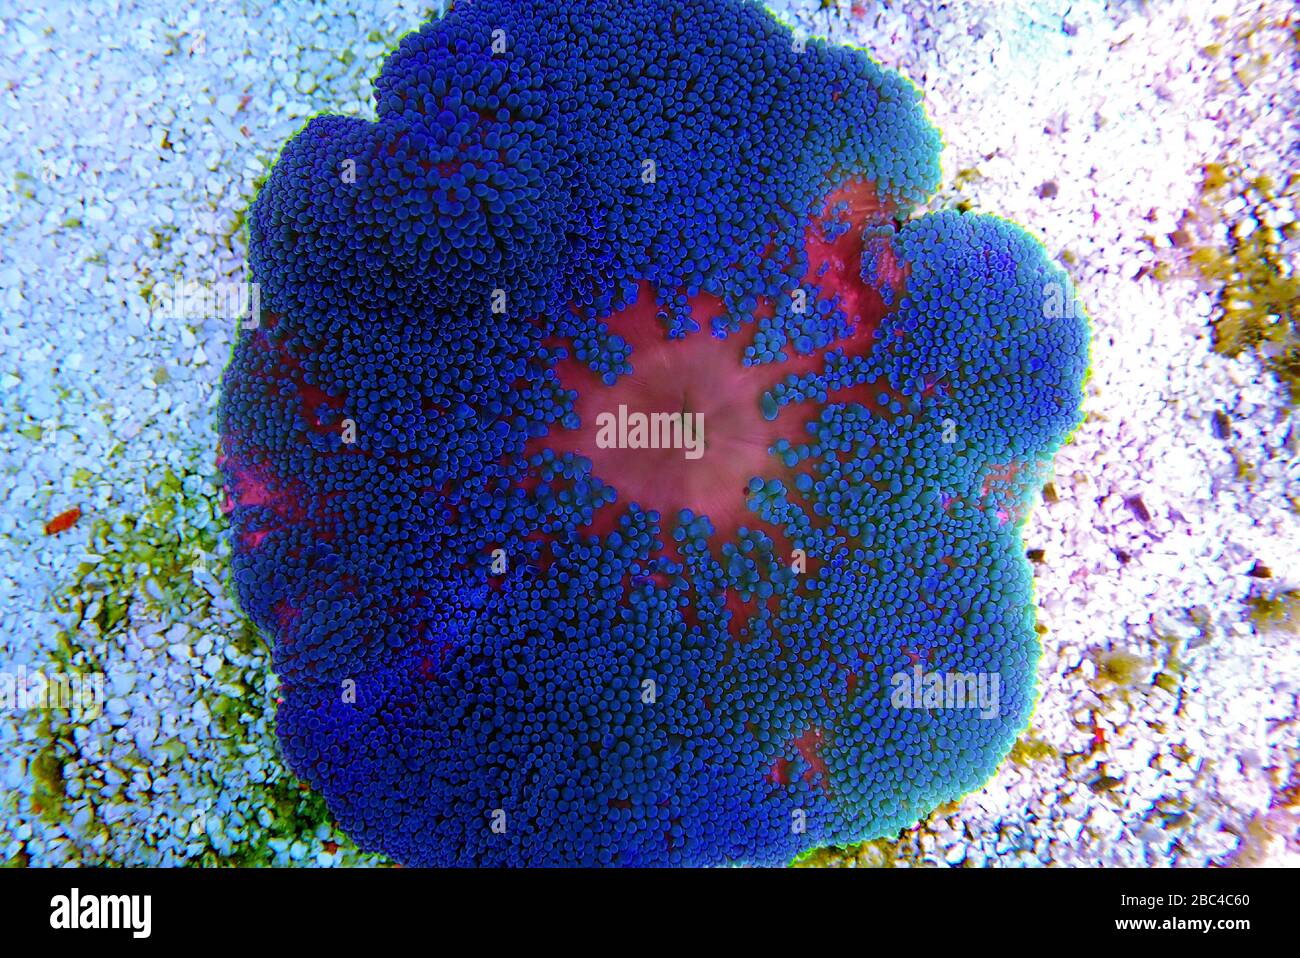 Blue colorful carpet sea anemone - Stichodactyla haddoni Stock Photo